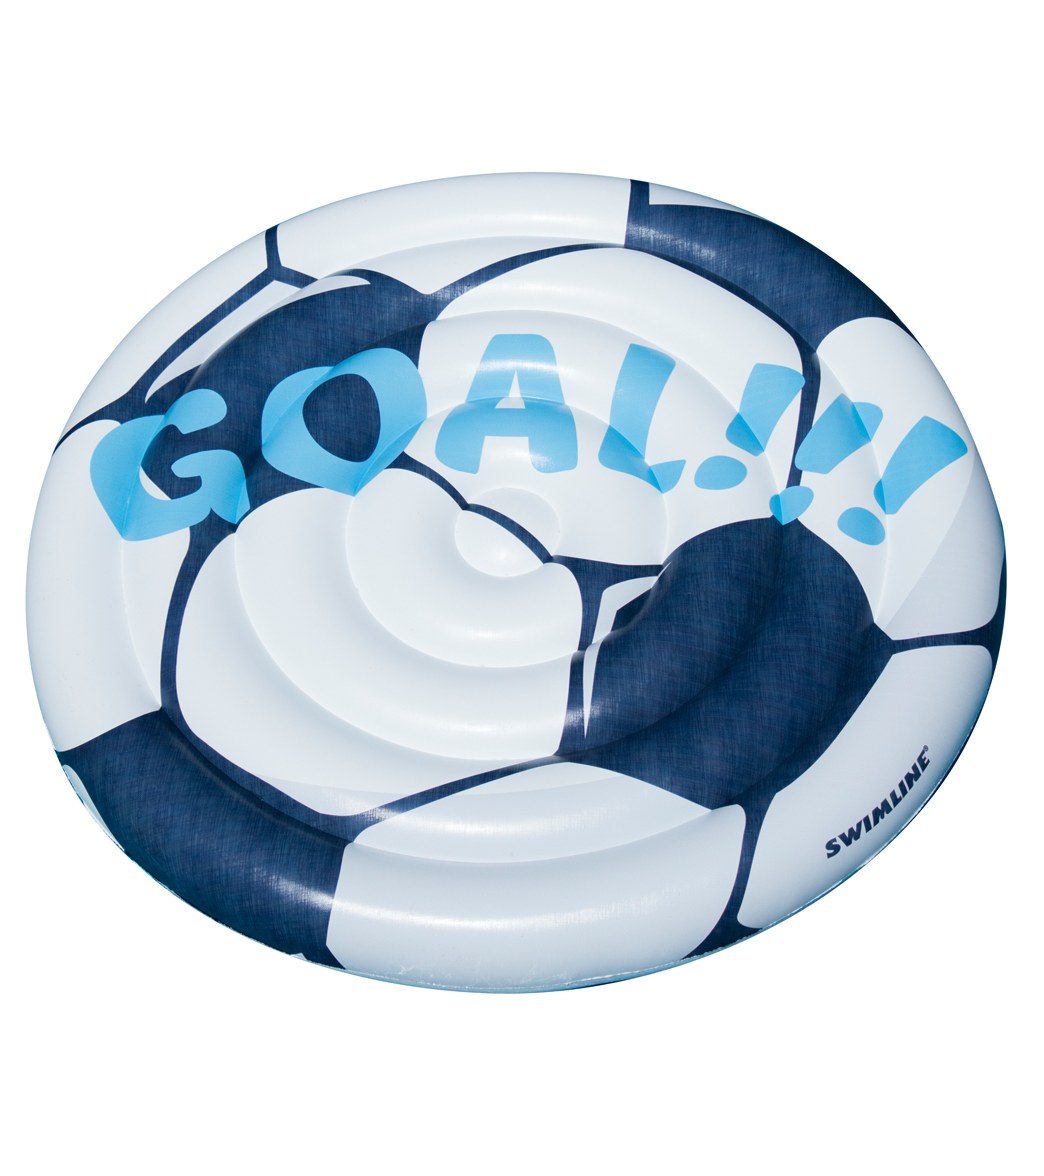 Swimline Soccer Ball Island - 60 Multi Color - Swimoutlet.com